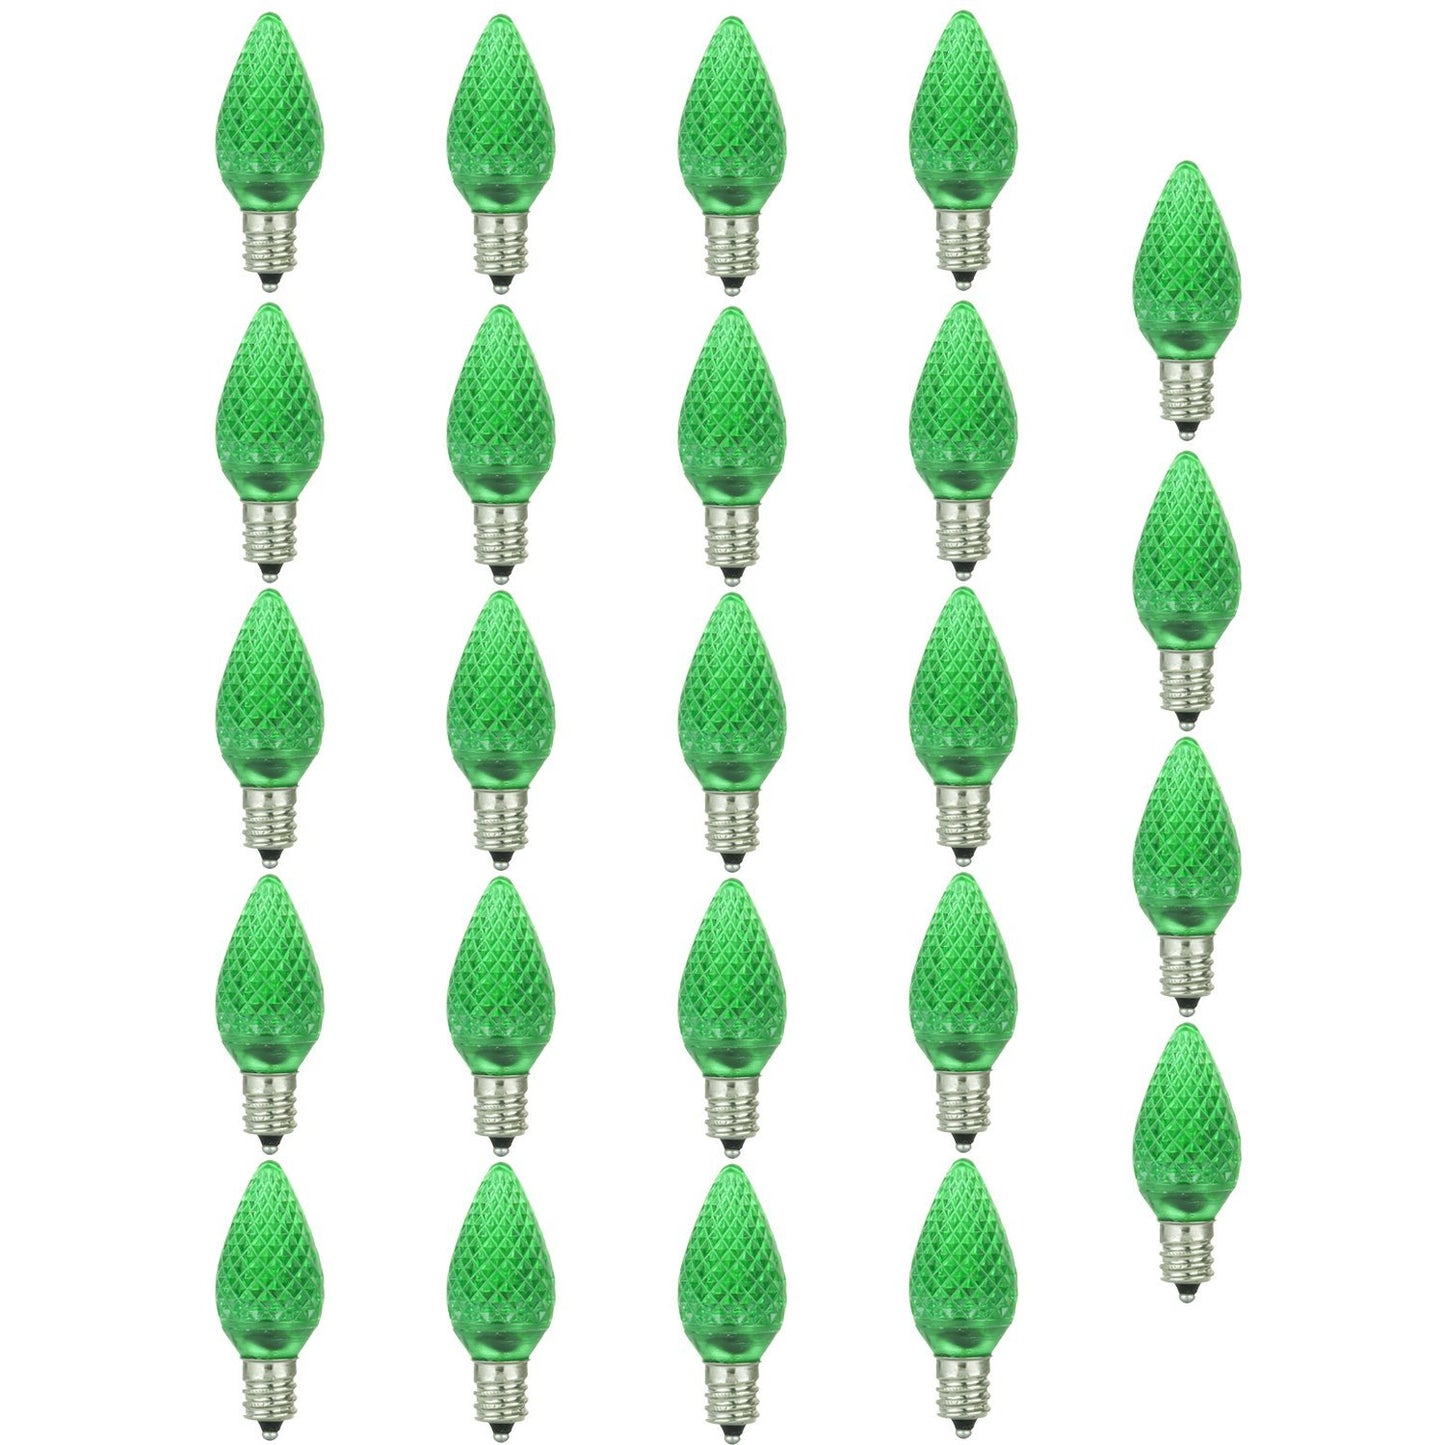 Sunlite LED C7 0.4W Green Colored Night Light Bulbs Candelabra (E12) Base